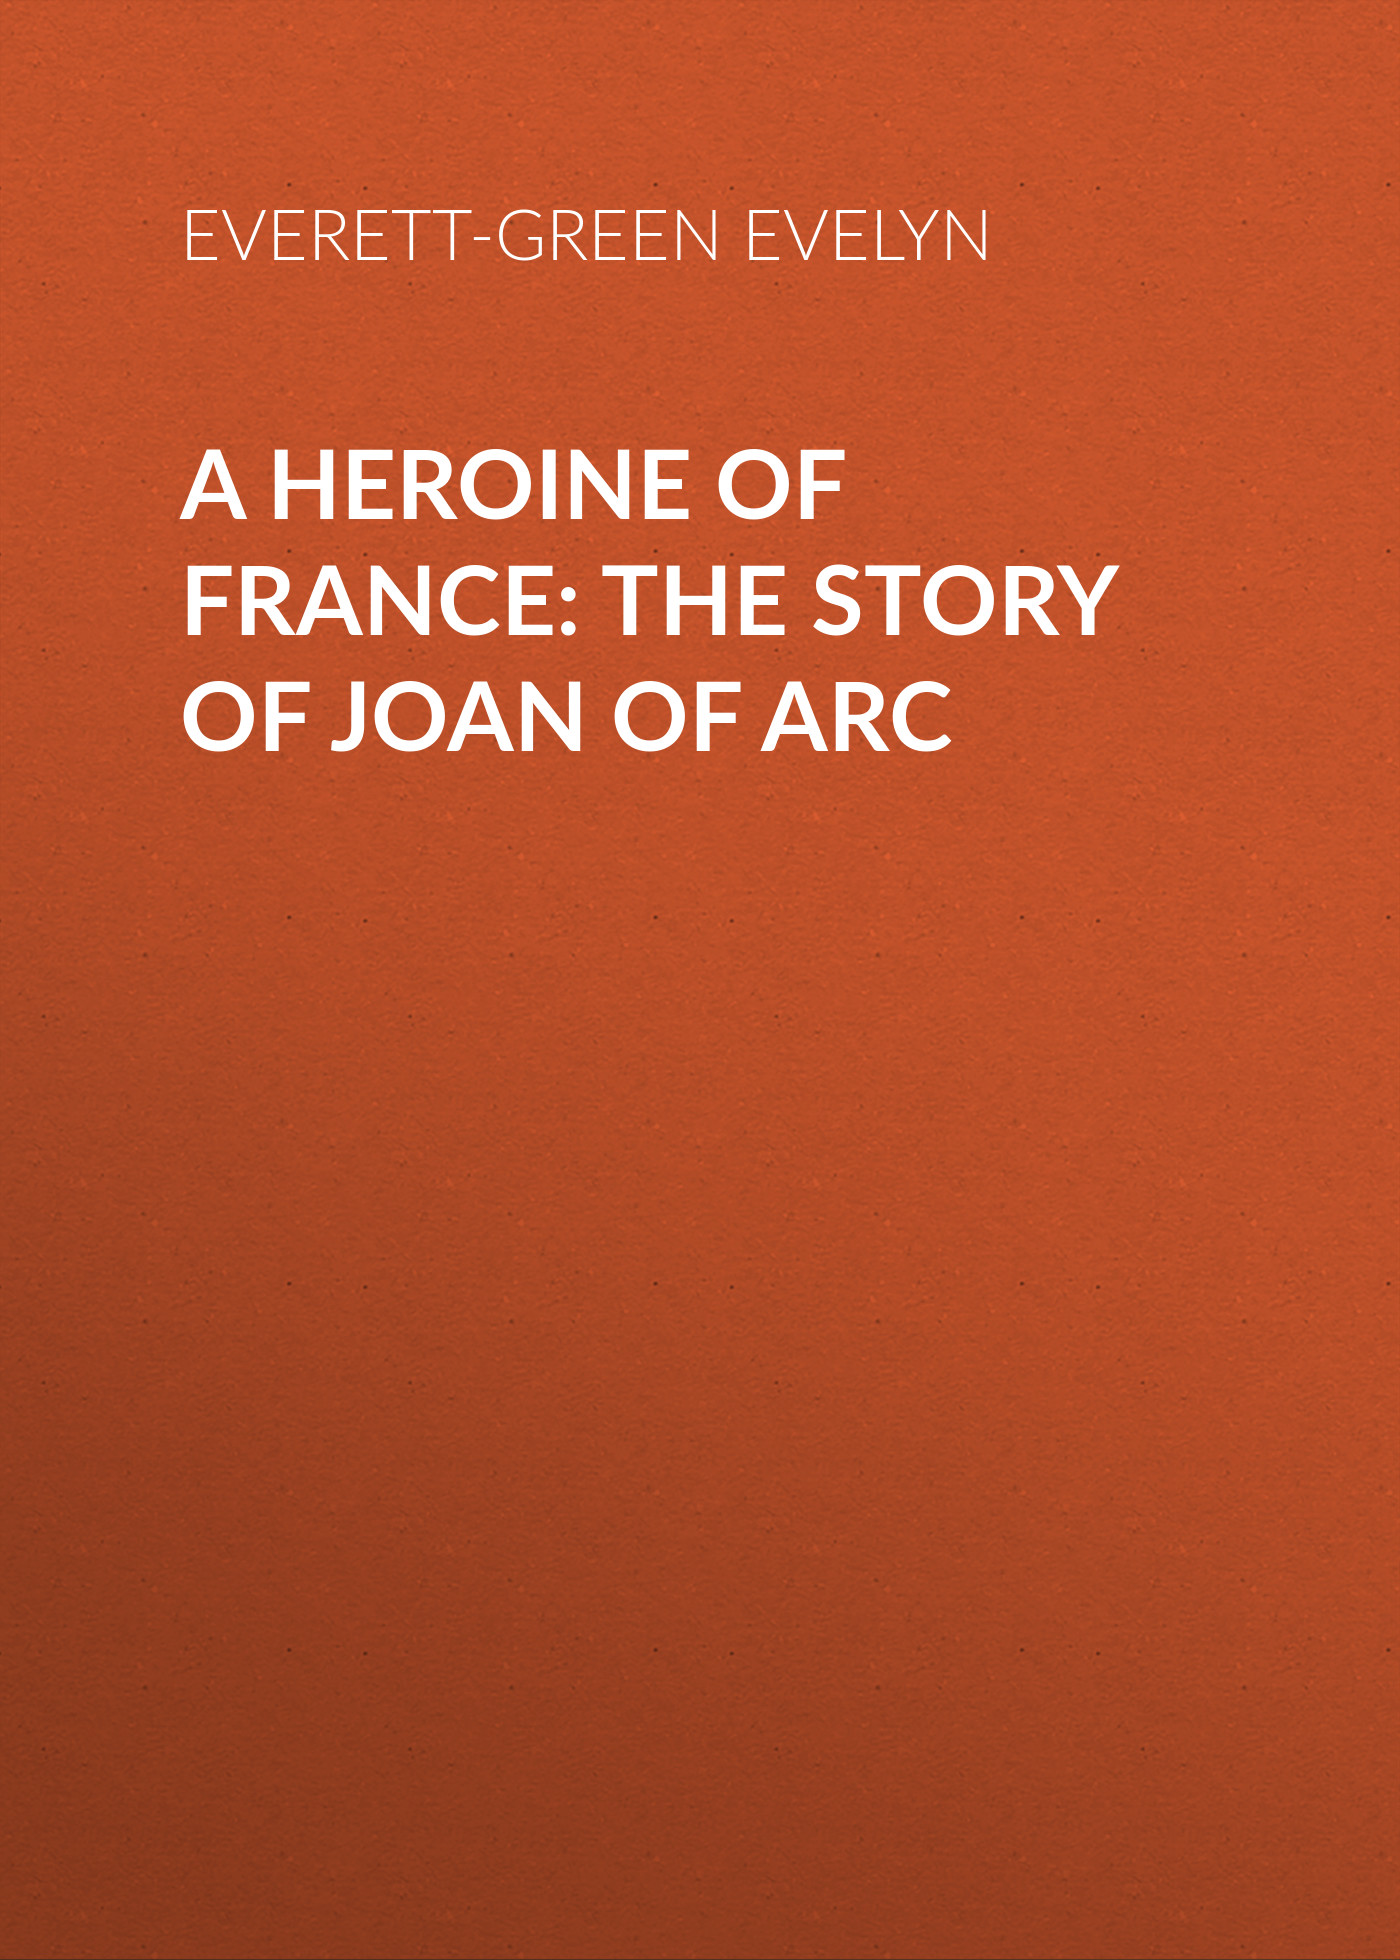 Книга A Heroine of France: The Story of Joan of Arc из серии , созданная Evelyn Everett-Green, может относится к жанру Зарубежная старинная литература, Зарубежная классика. Стоимость электронной книги A Heroine of France: The Story of Joan of Arc с идентификатором 25201615 составляет 0 руб.